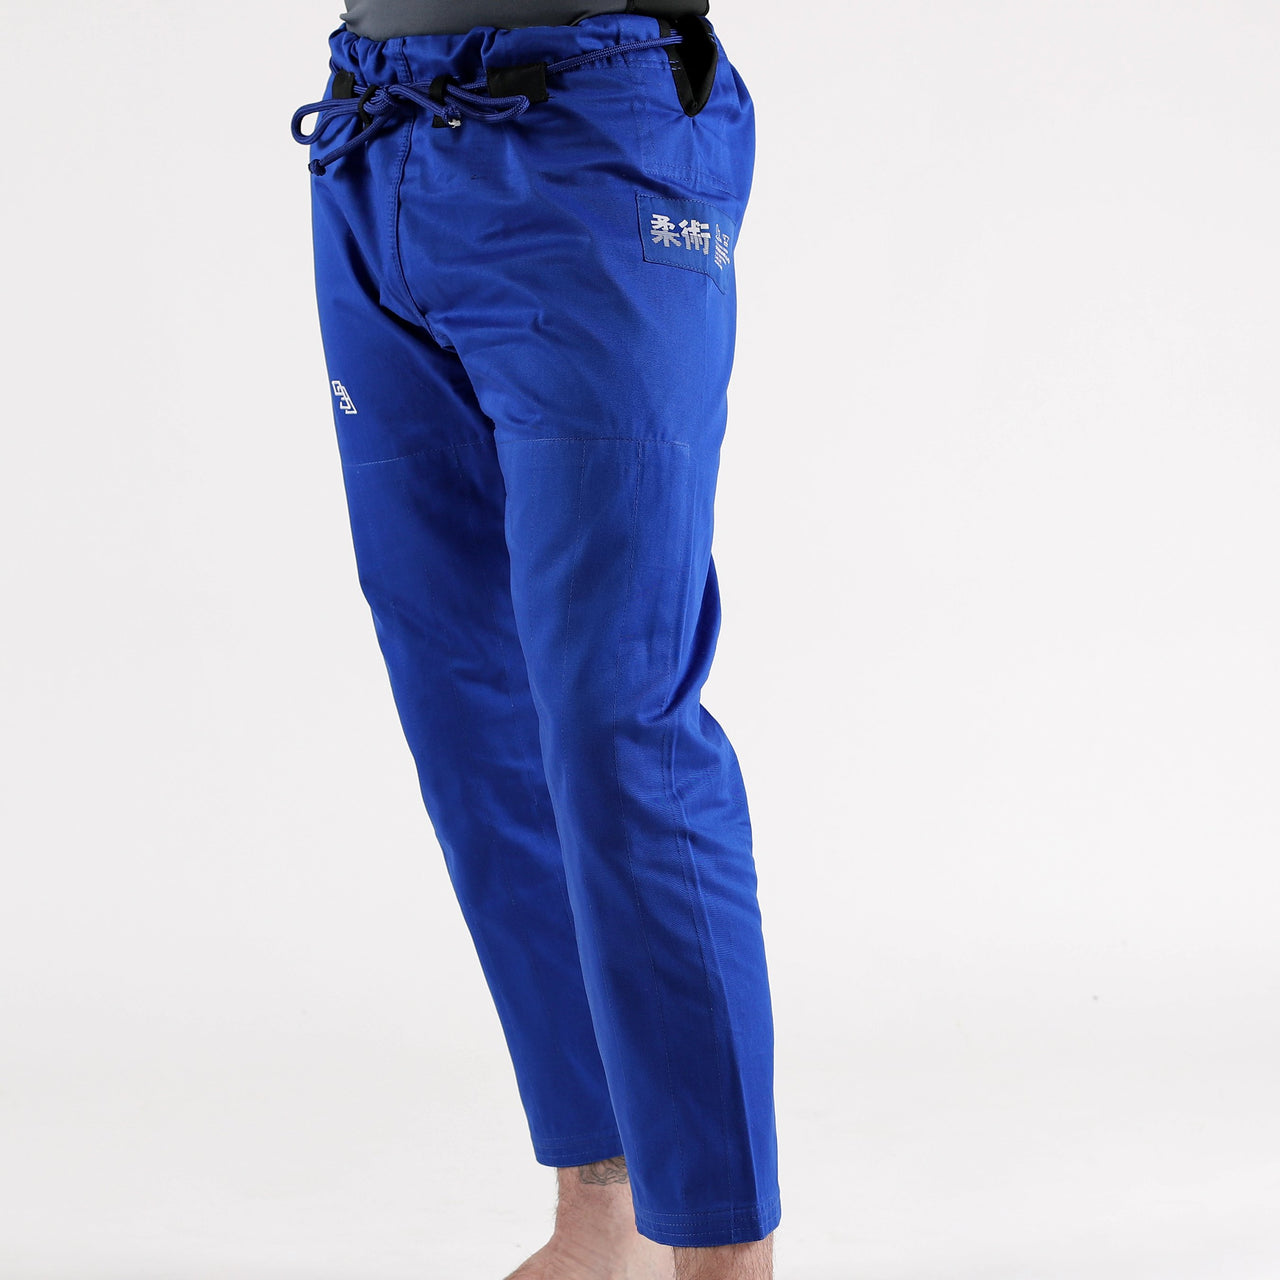 93brand Separate Women's BJJ Gi Pants - Blue